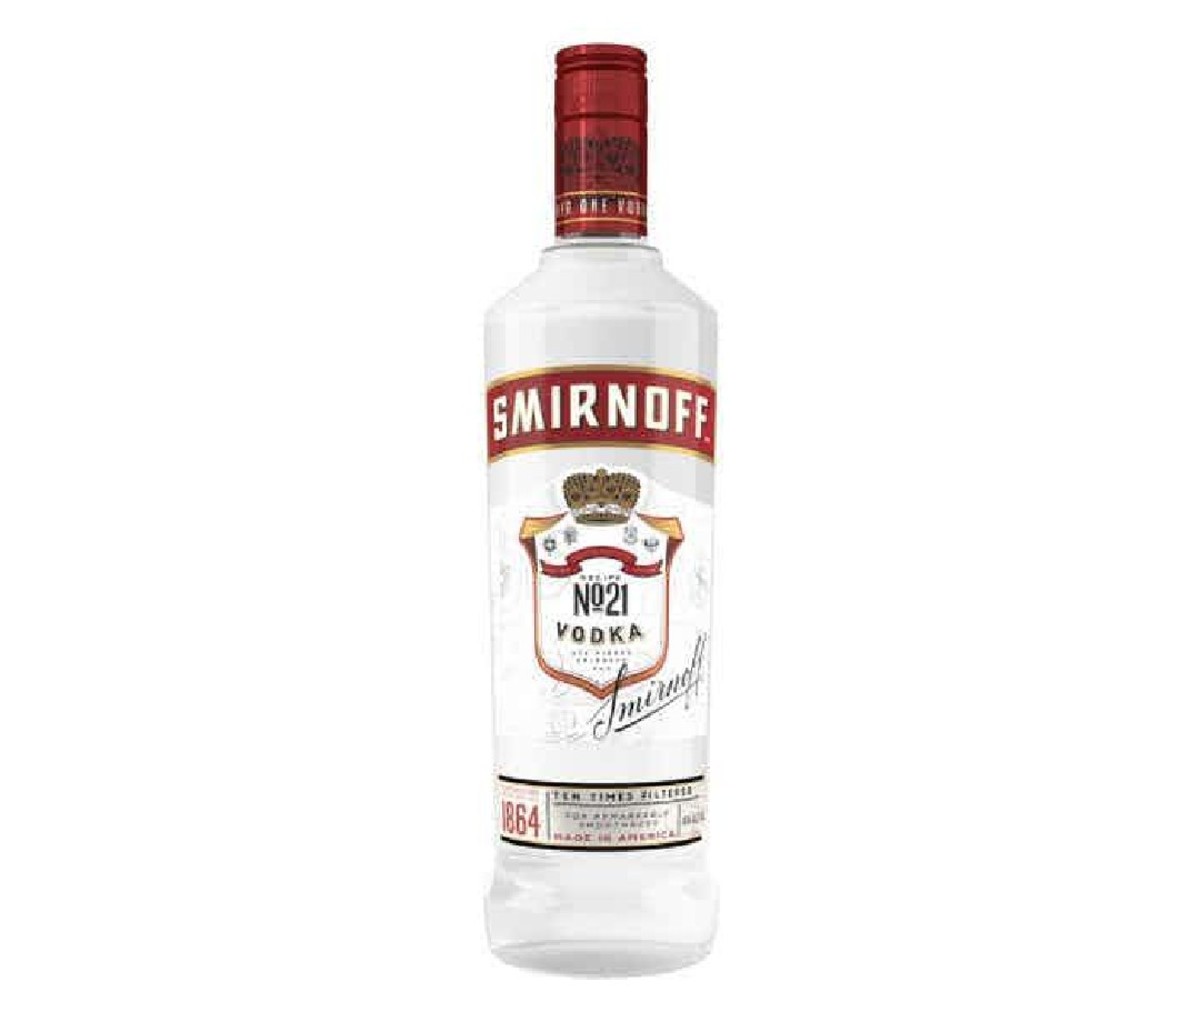 A bottle of Smirnoff Vodka No. 21